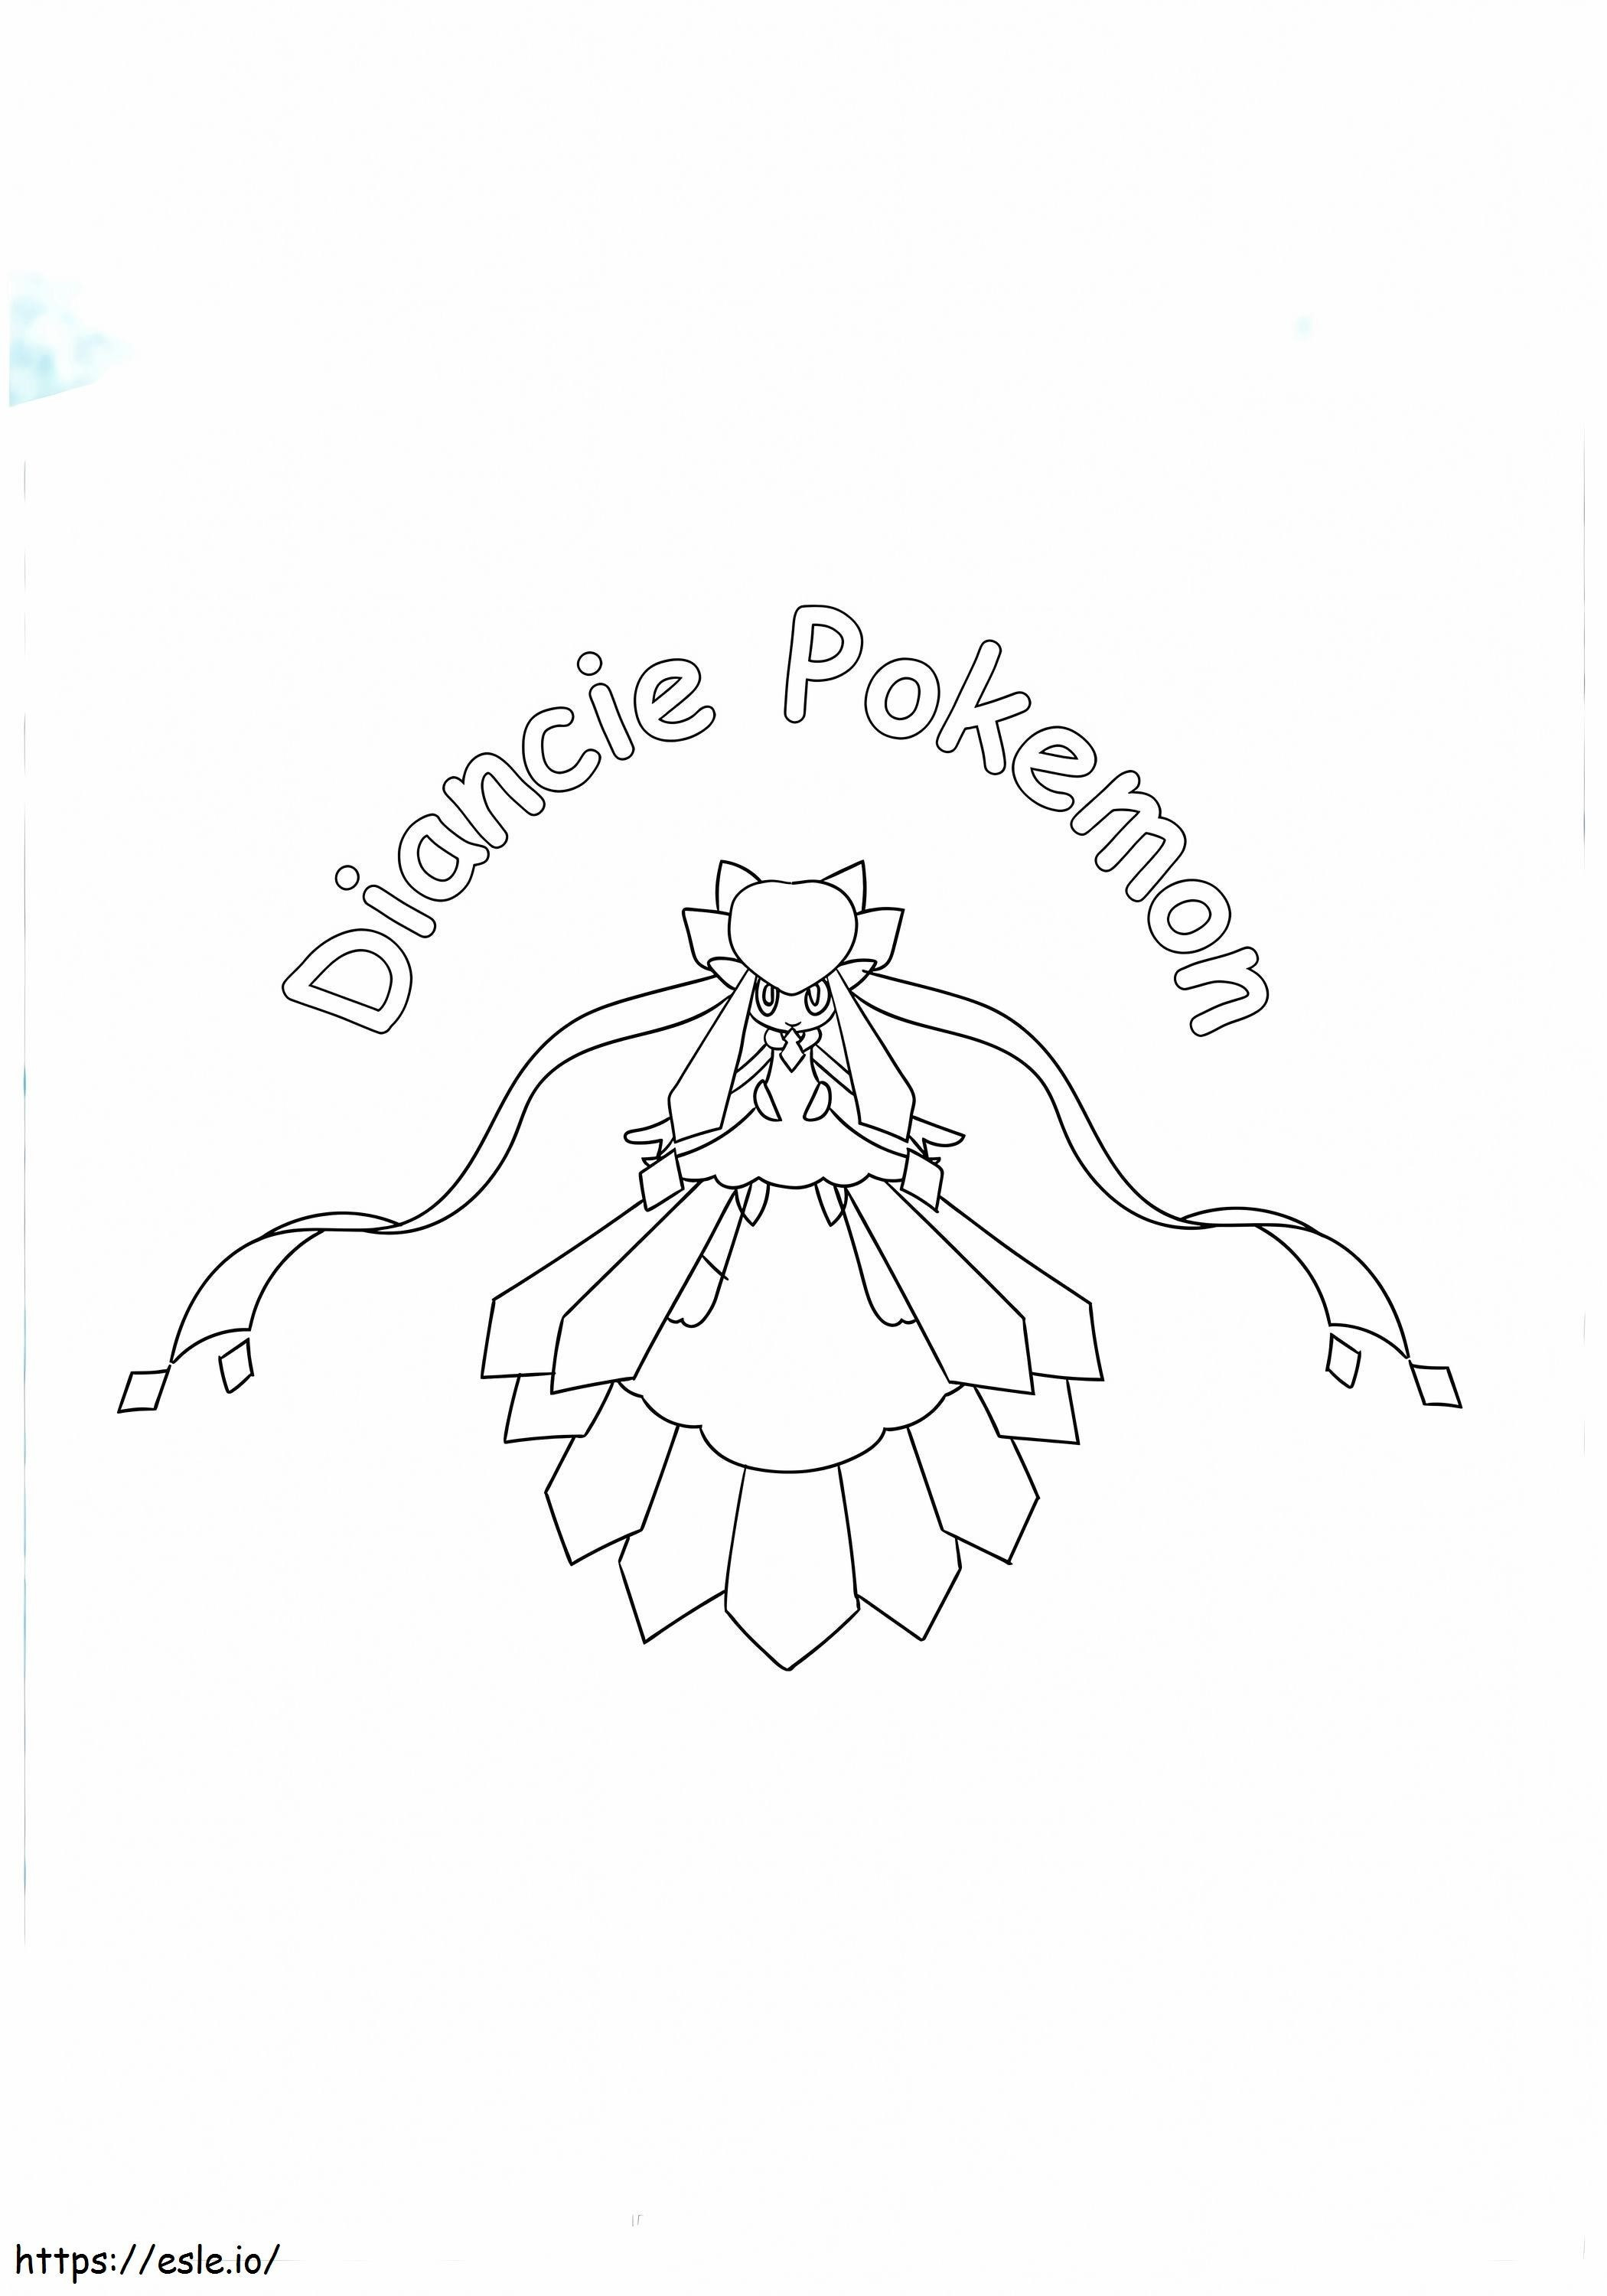  Diancie Pokemon 17 A4-Kopie ausmalbilder